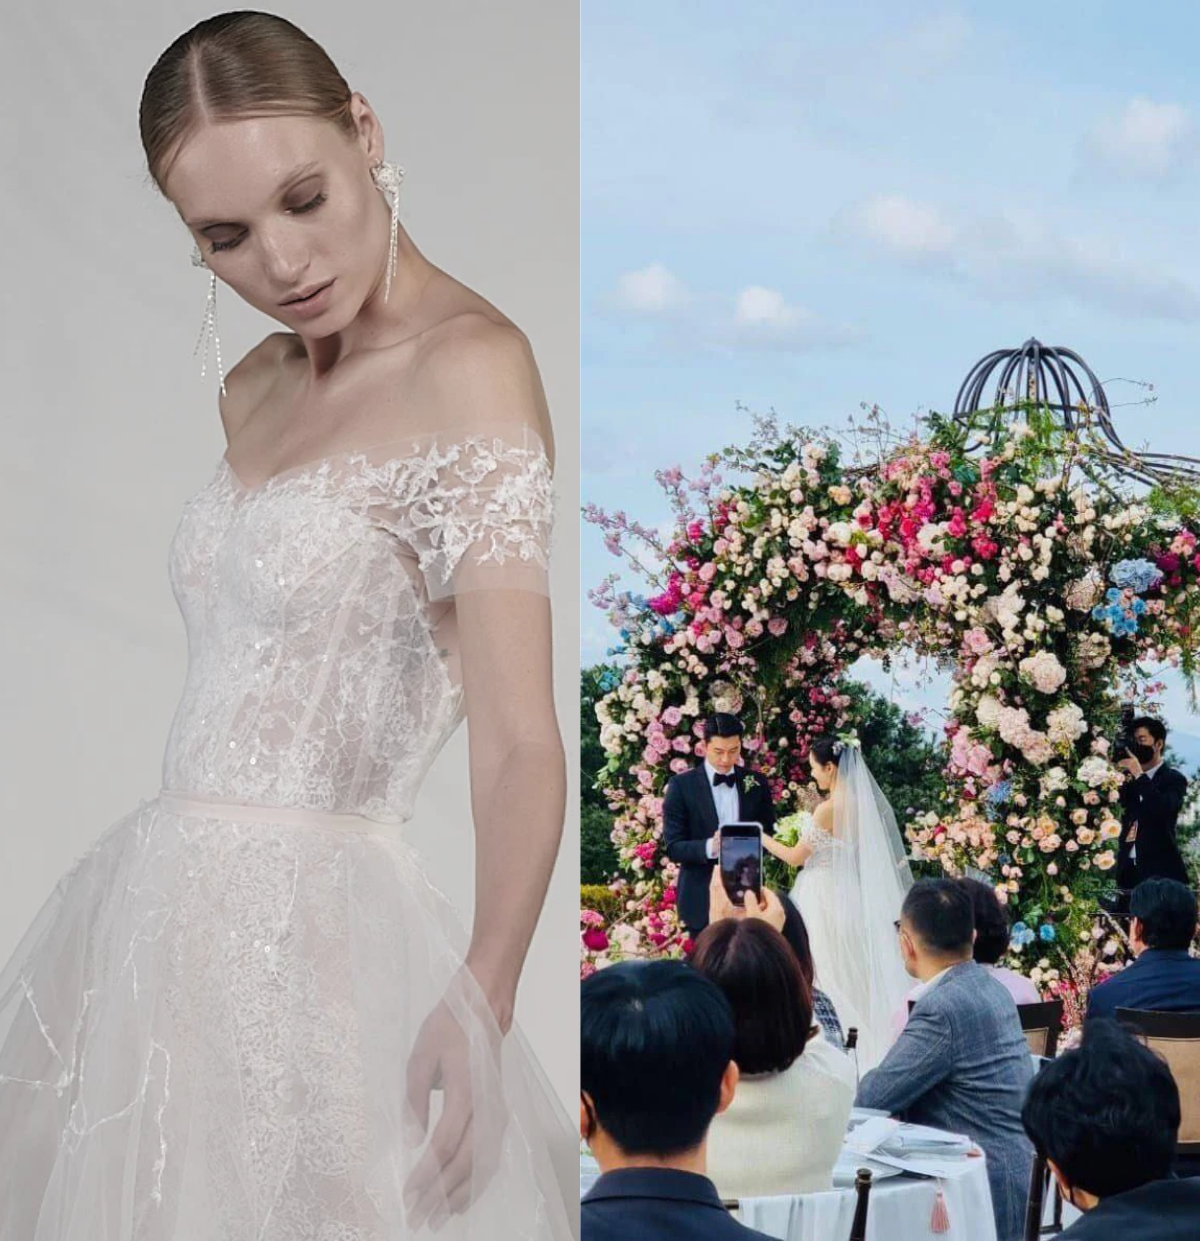 Trong lễ cưới chính thức diễn ra chiều nay, Son Ye Jin lại không diễn các mẫu váy trên mà lại chọn mẫu váy từ thương hiệu Mira Zwillinger 